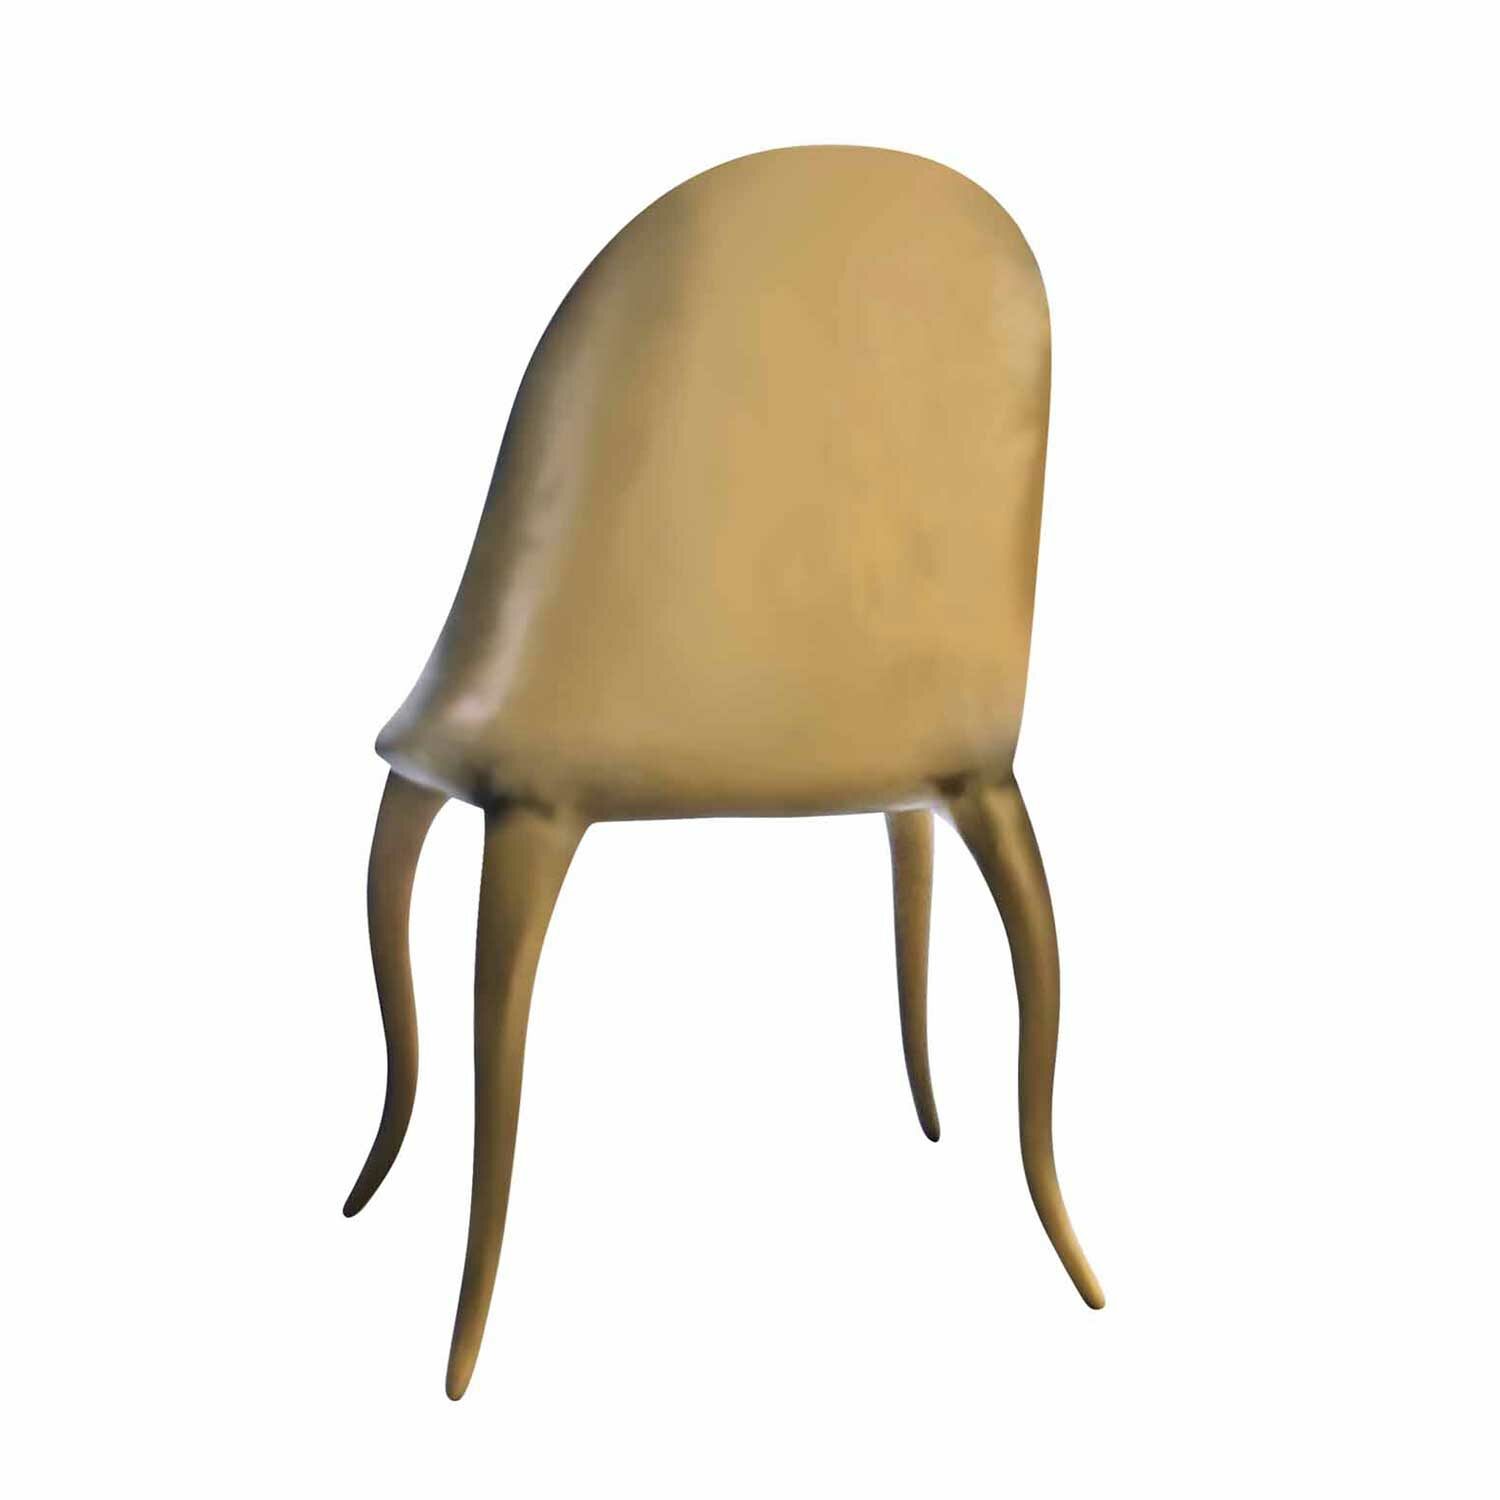 DAISY K1300b chair